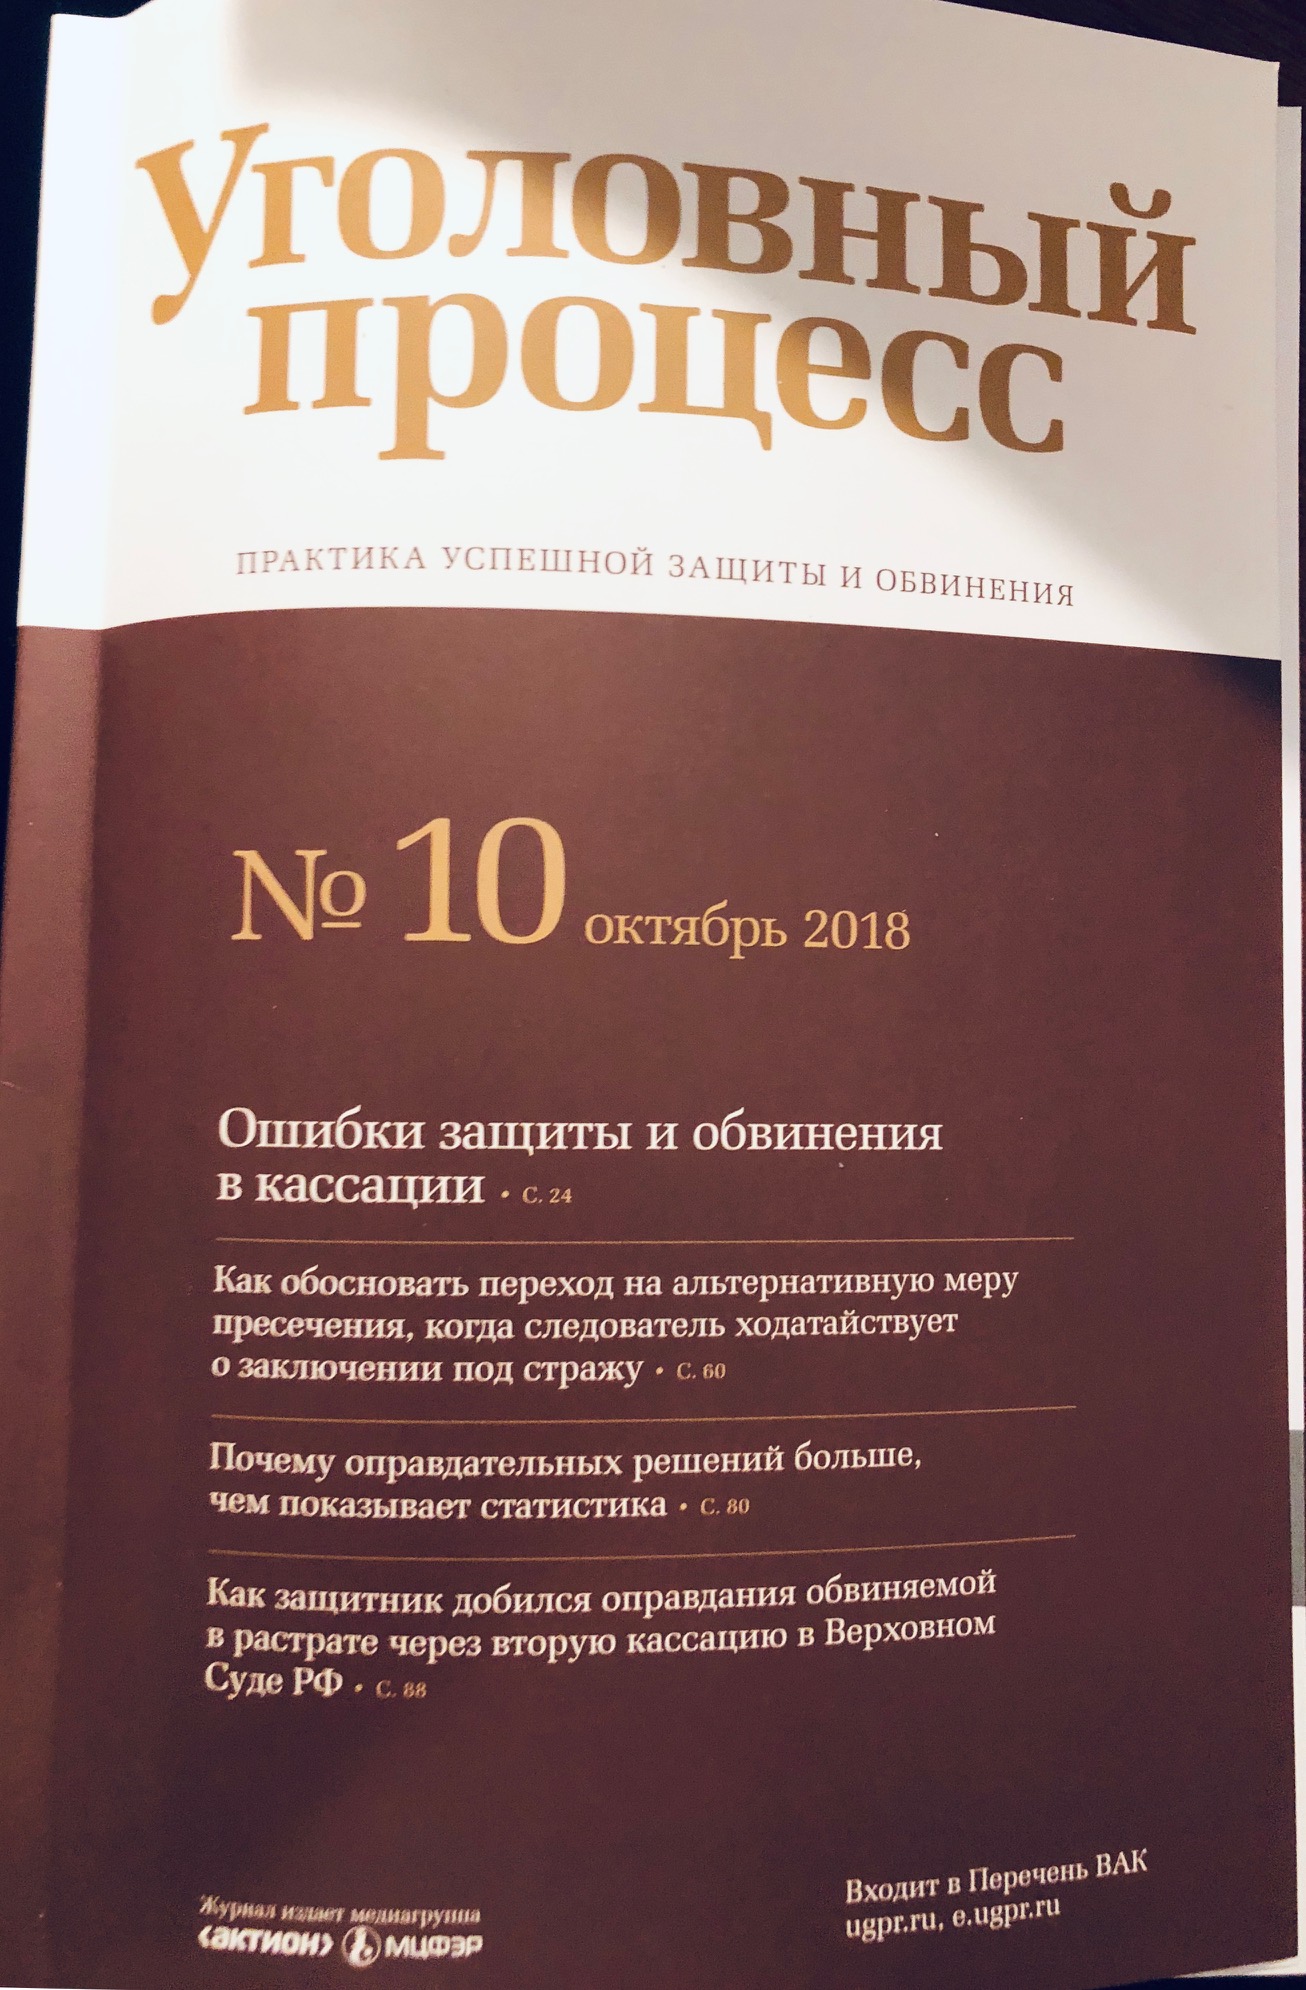 Журнал "Уголовный процесс" № 10 2018